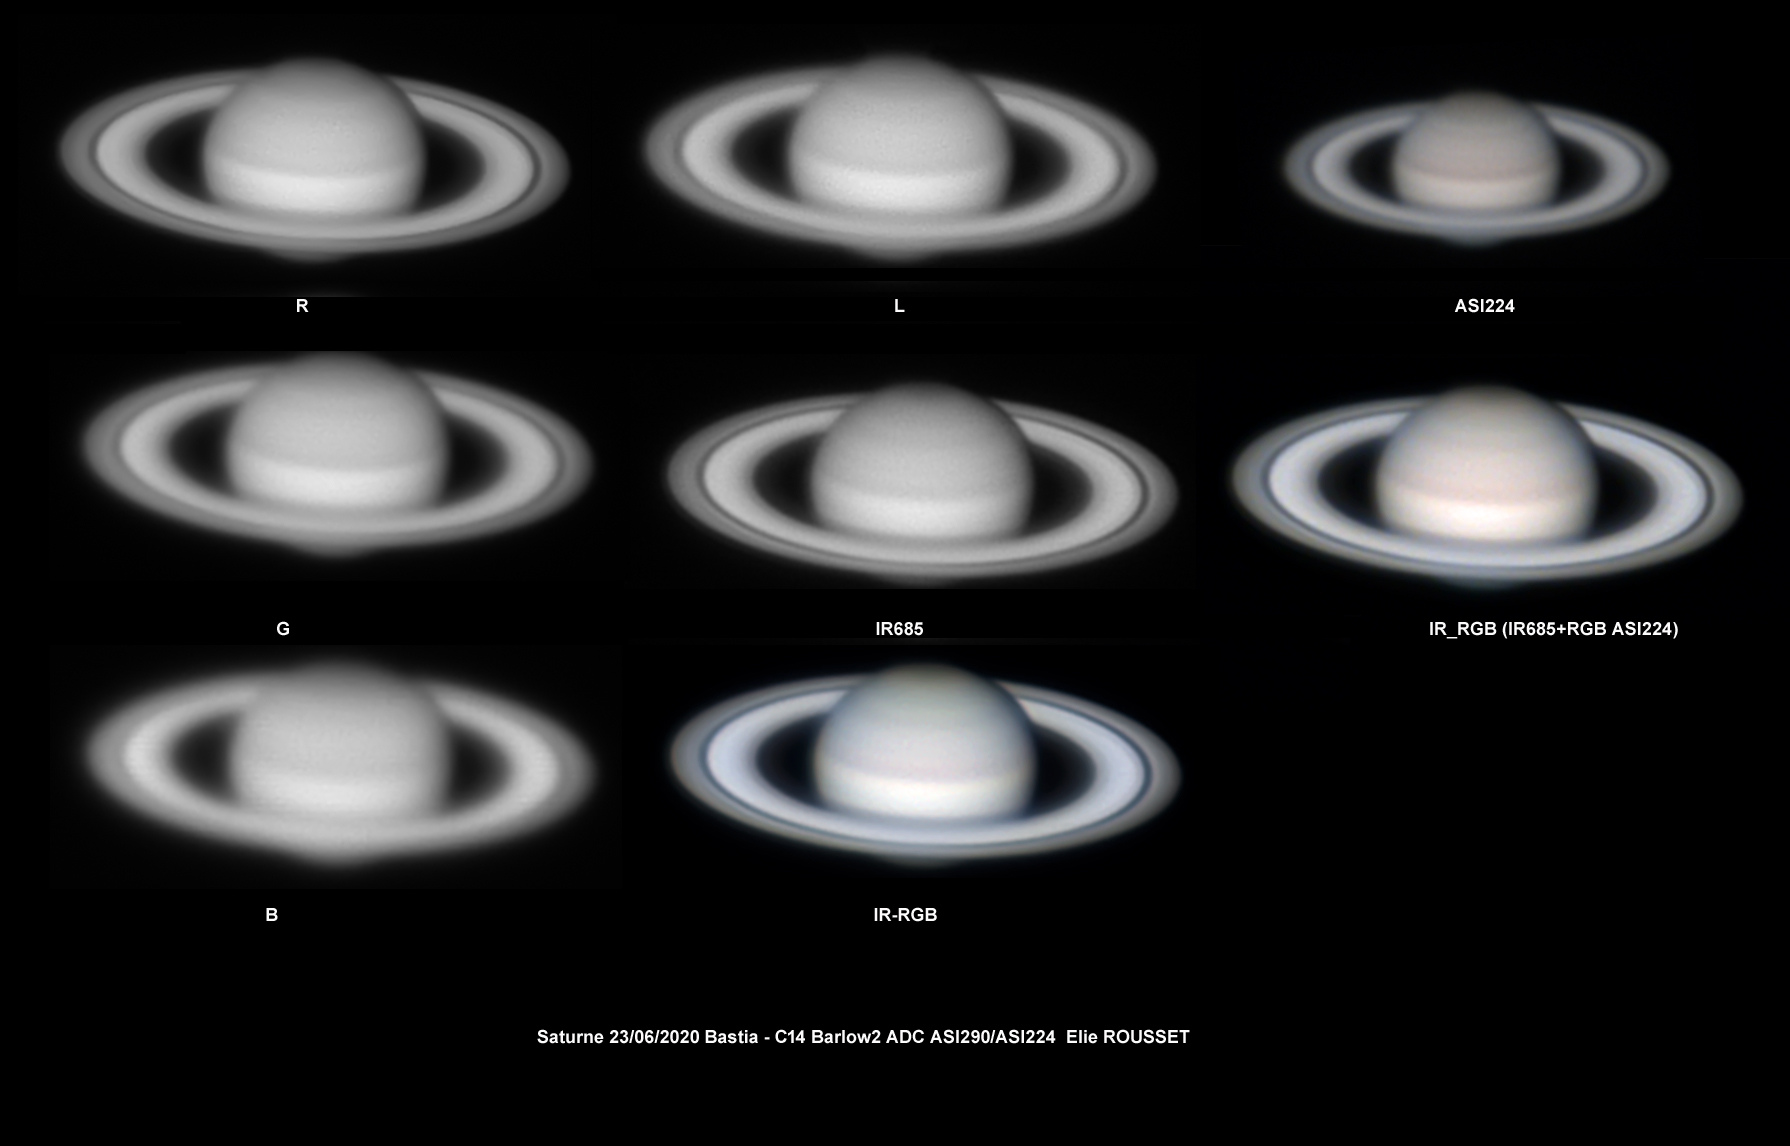 Saturne-23-06-2020-Planche1.jpg